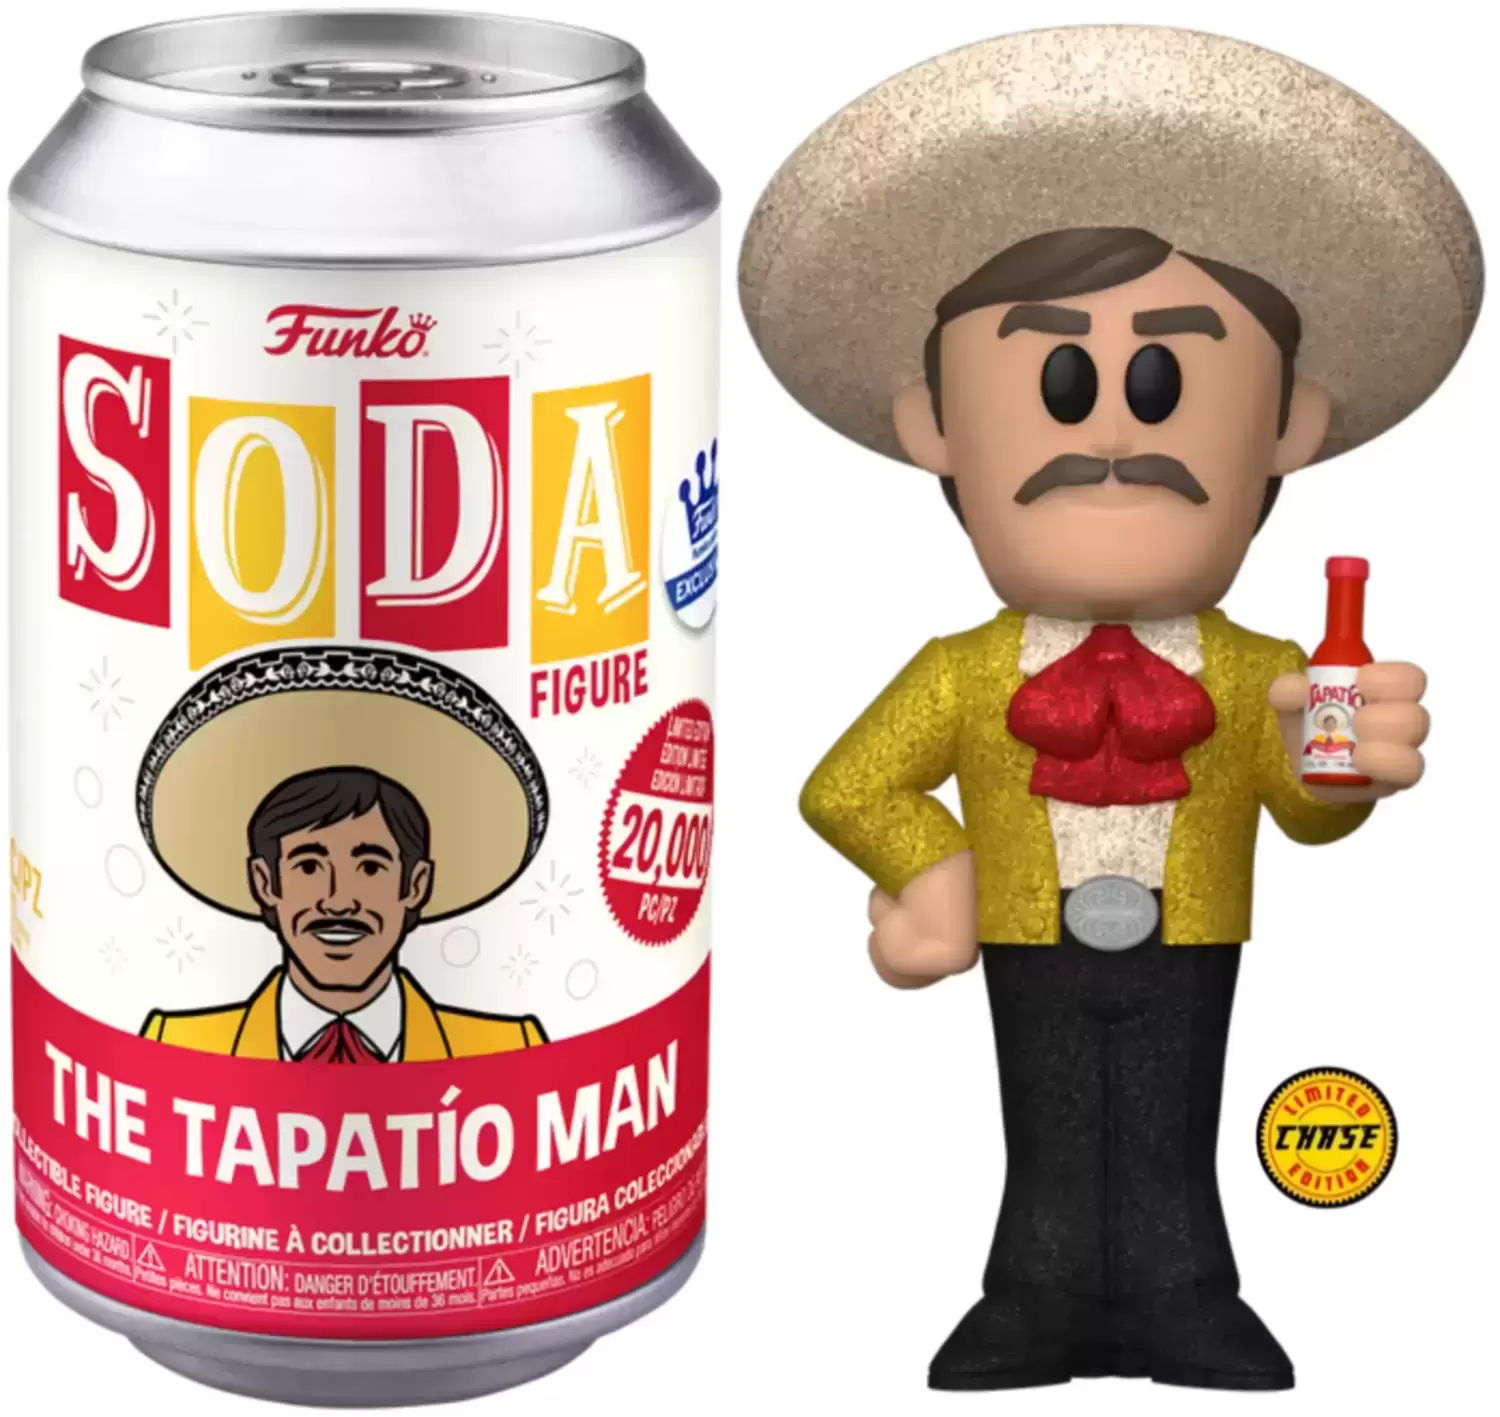 Vinyl Soda! - The Tapatio Man Chase